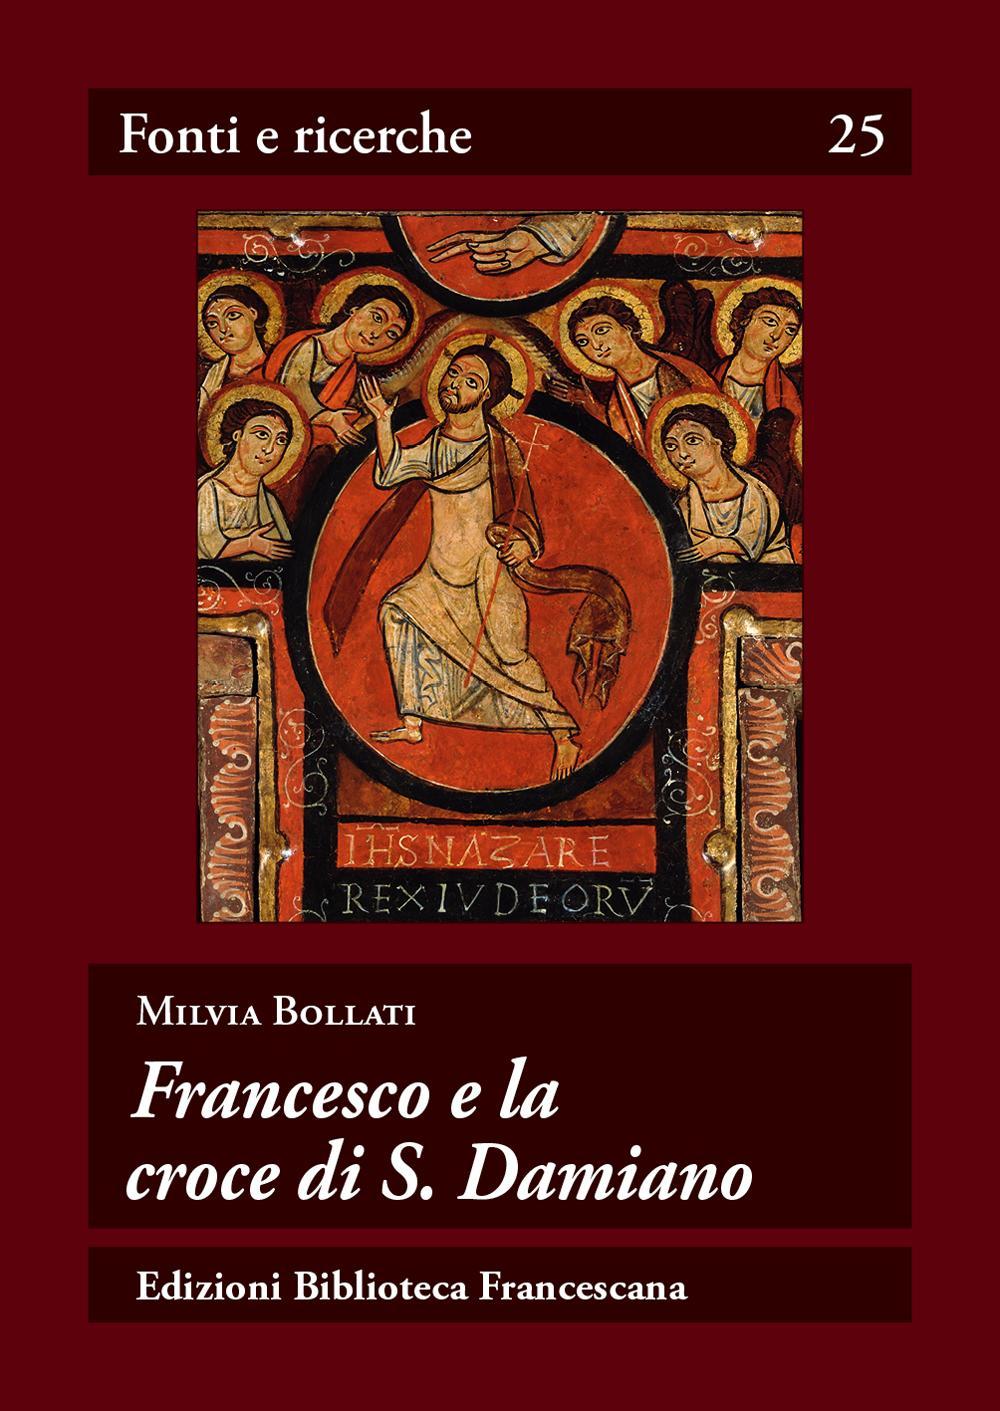 Libri Milvia Bollati - Francesco E La Croce Di S. Damiano NUOVO SIGILLATO, EDIZIONE DEL 25/05/2016 SUBITO DISPONIBILE